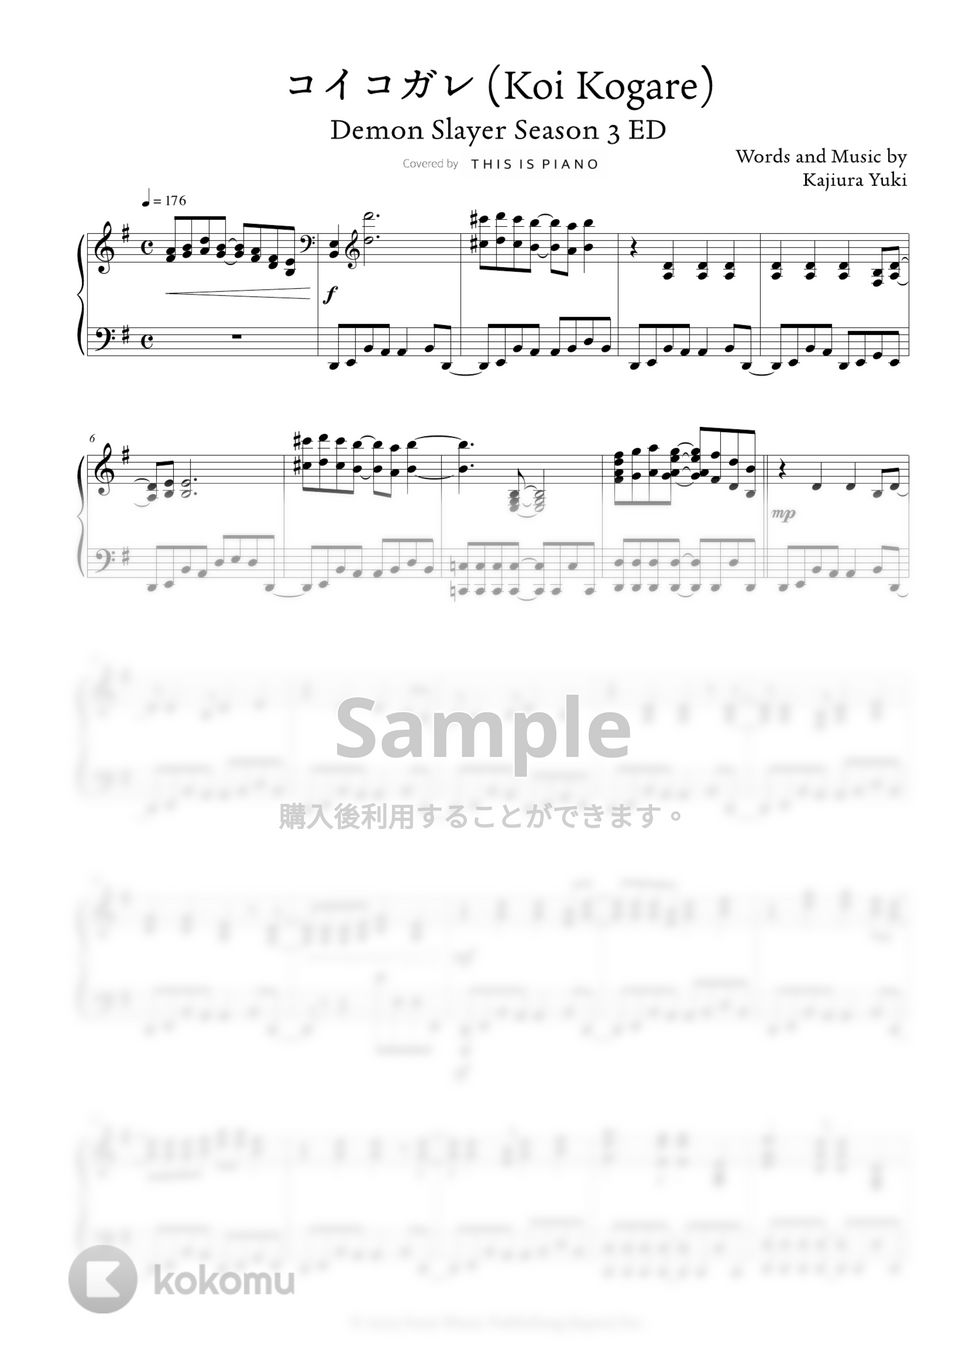 鬼滅の刃 刀鍛冶の里編 - コイコガレ by THIS IS PIANO